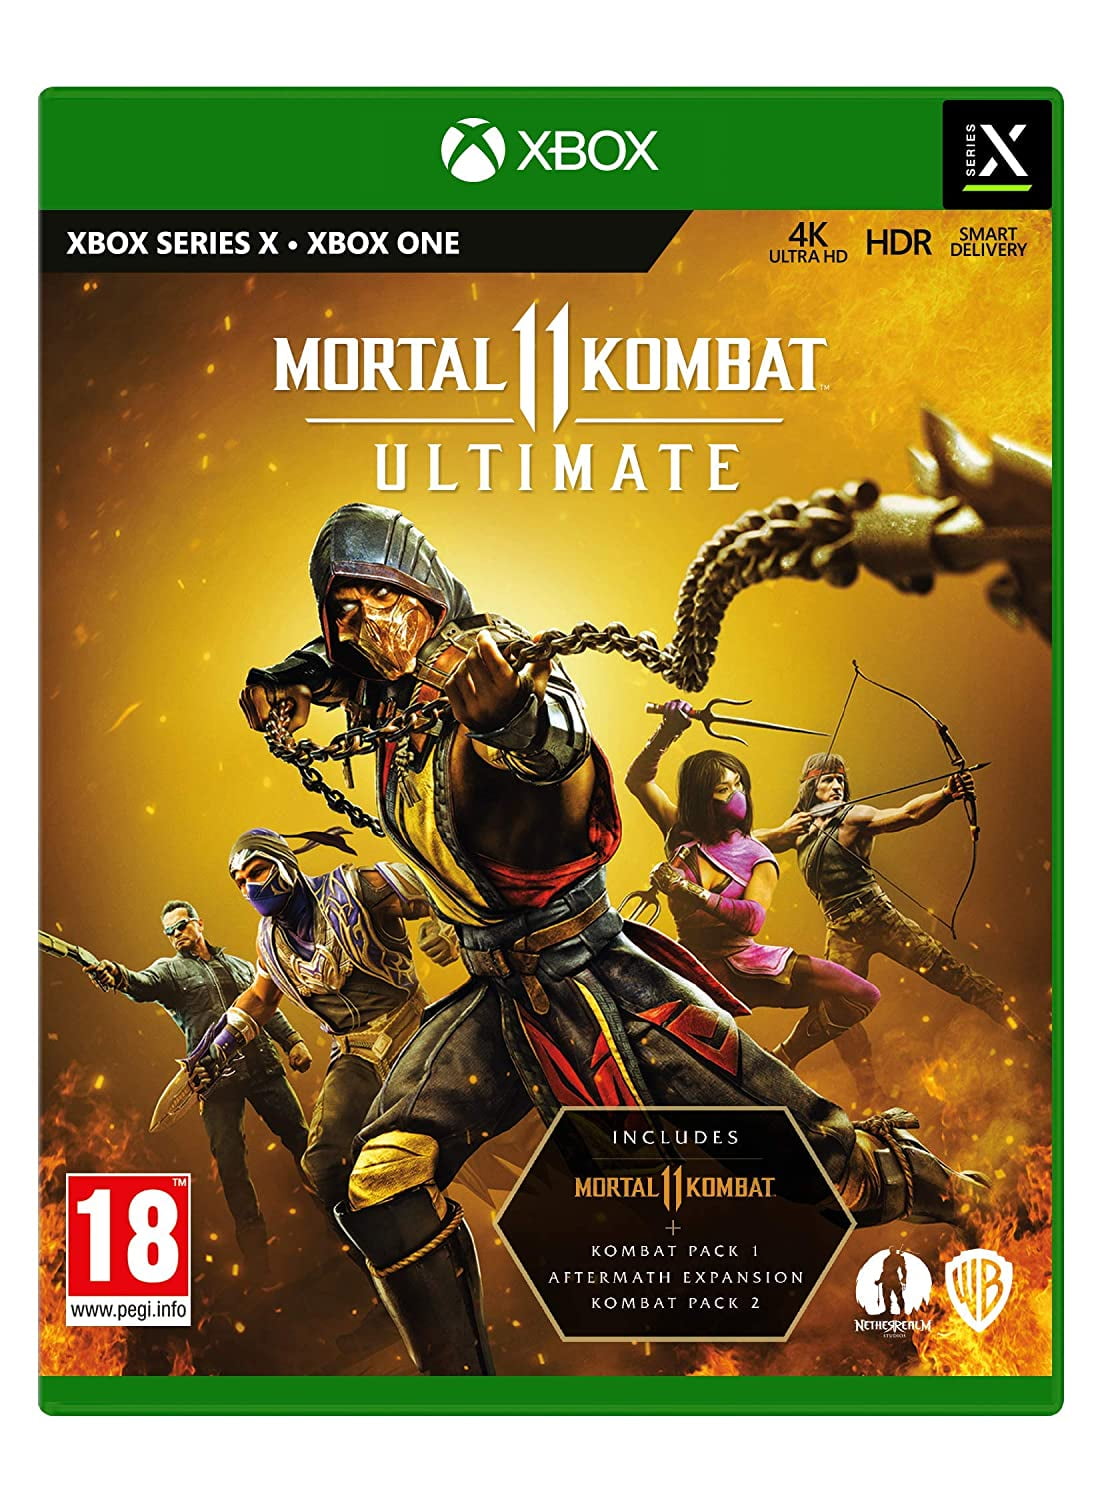 Mortal Kombat 9 - All Stage Fatalities HD 